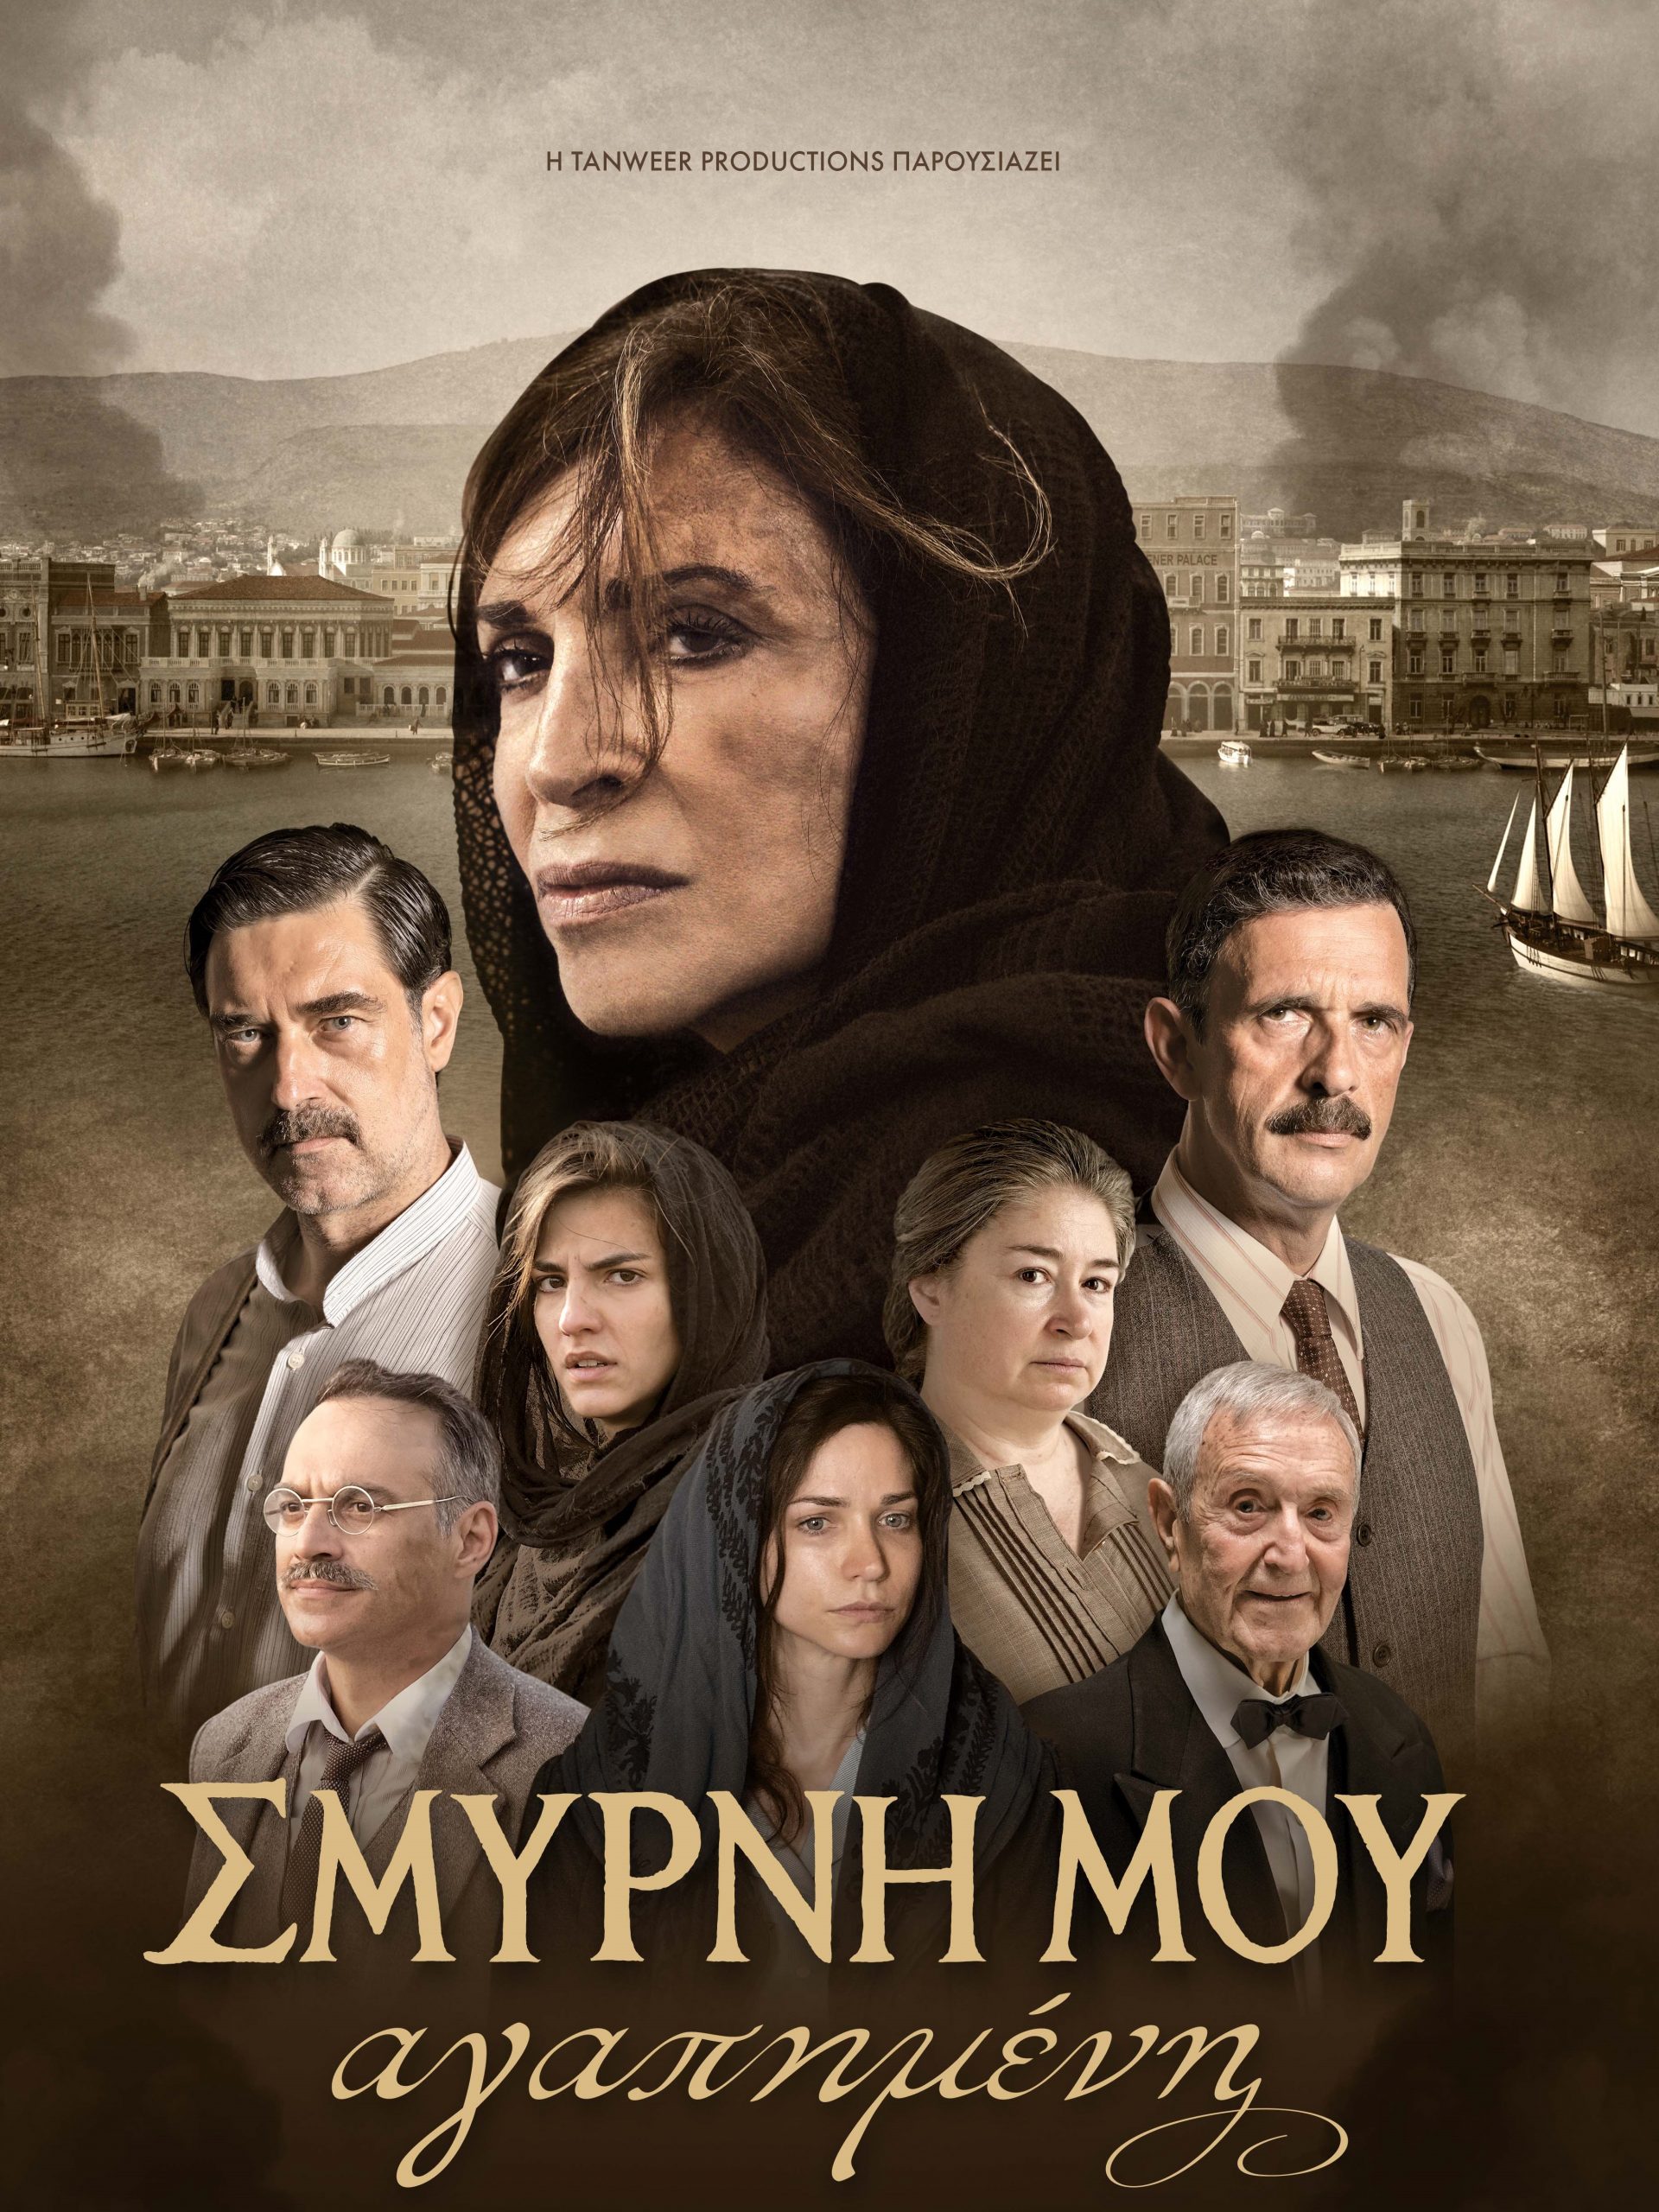 «Σμύρνη μου, αγαπημένη»: Έρχεται σε μίνι σειρά στον ALPHA Κύπρου η ταινία-υπερπαραγωγή - Πότε κάνει πρεμιέρα;